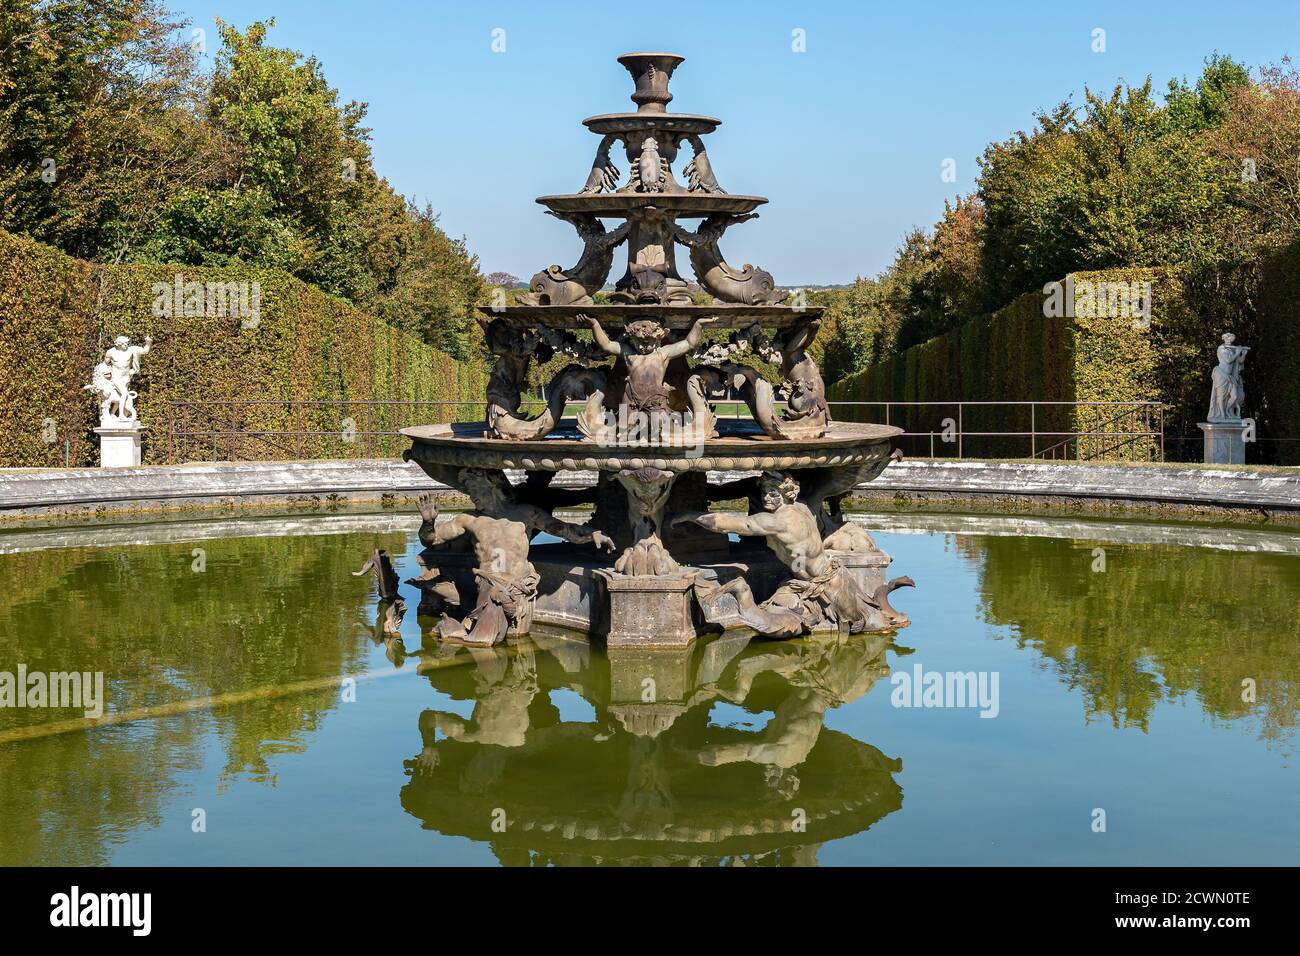 Fontaine de la pyramide dans les Jardins de Versailles - France Banque D'Images